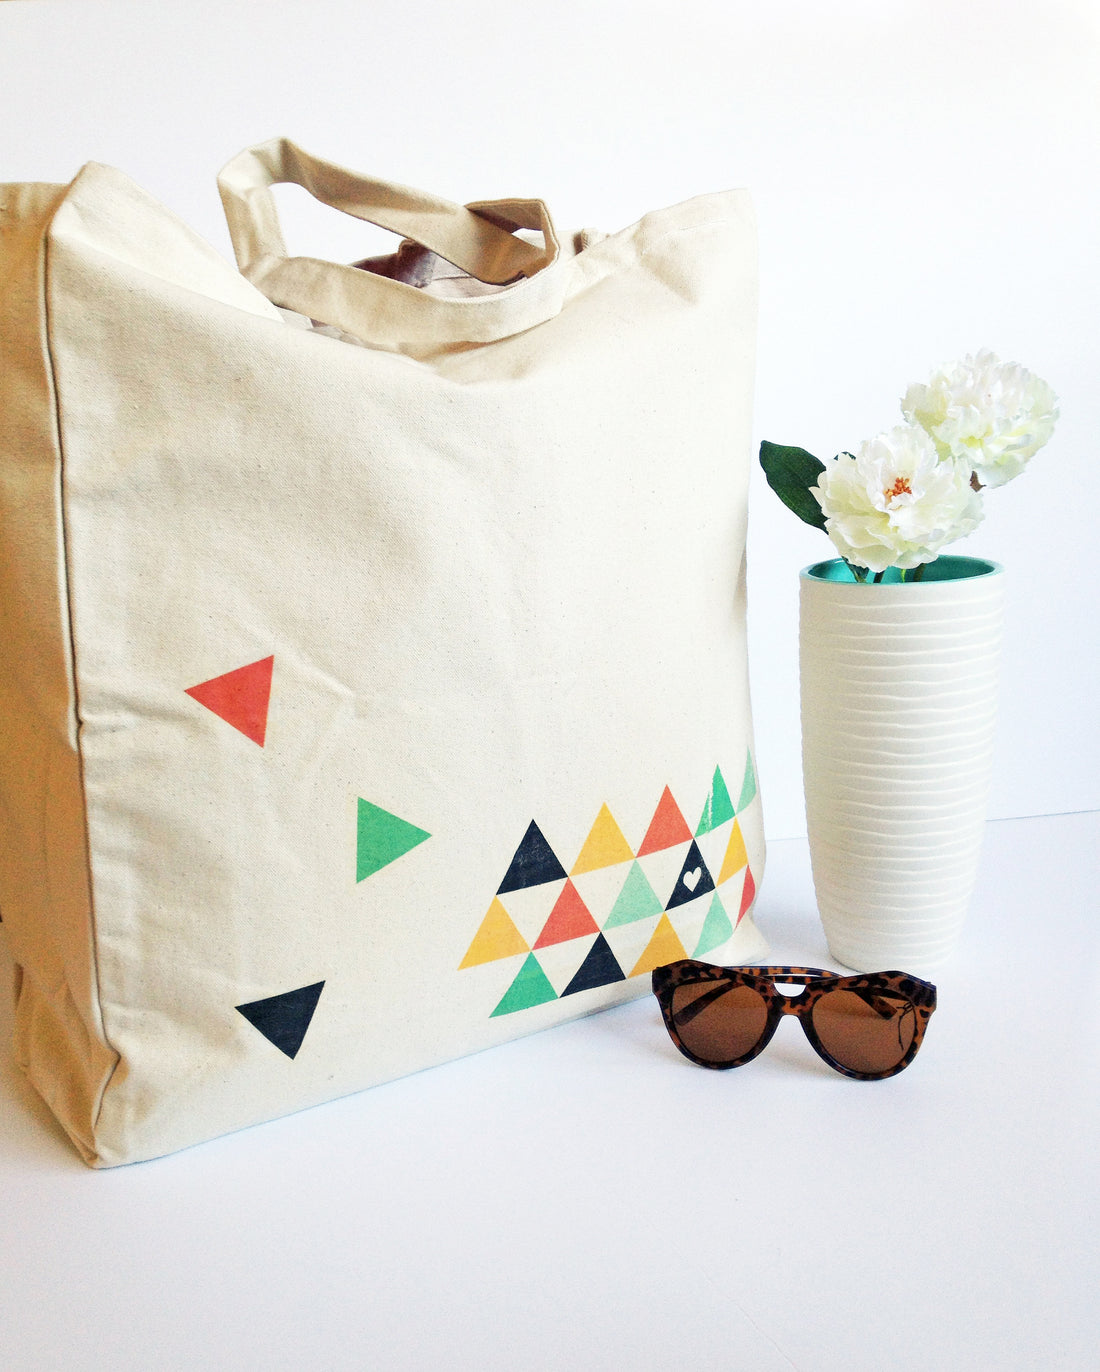 DIY geometric printed tote bag